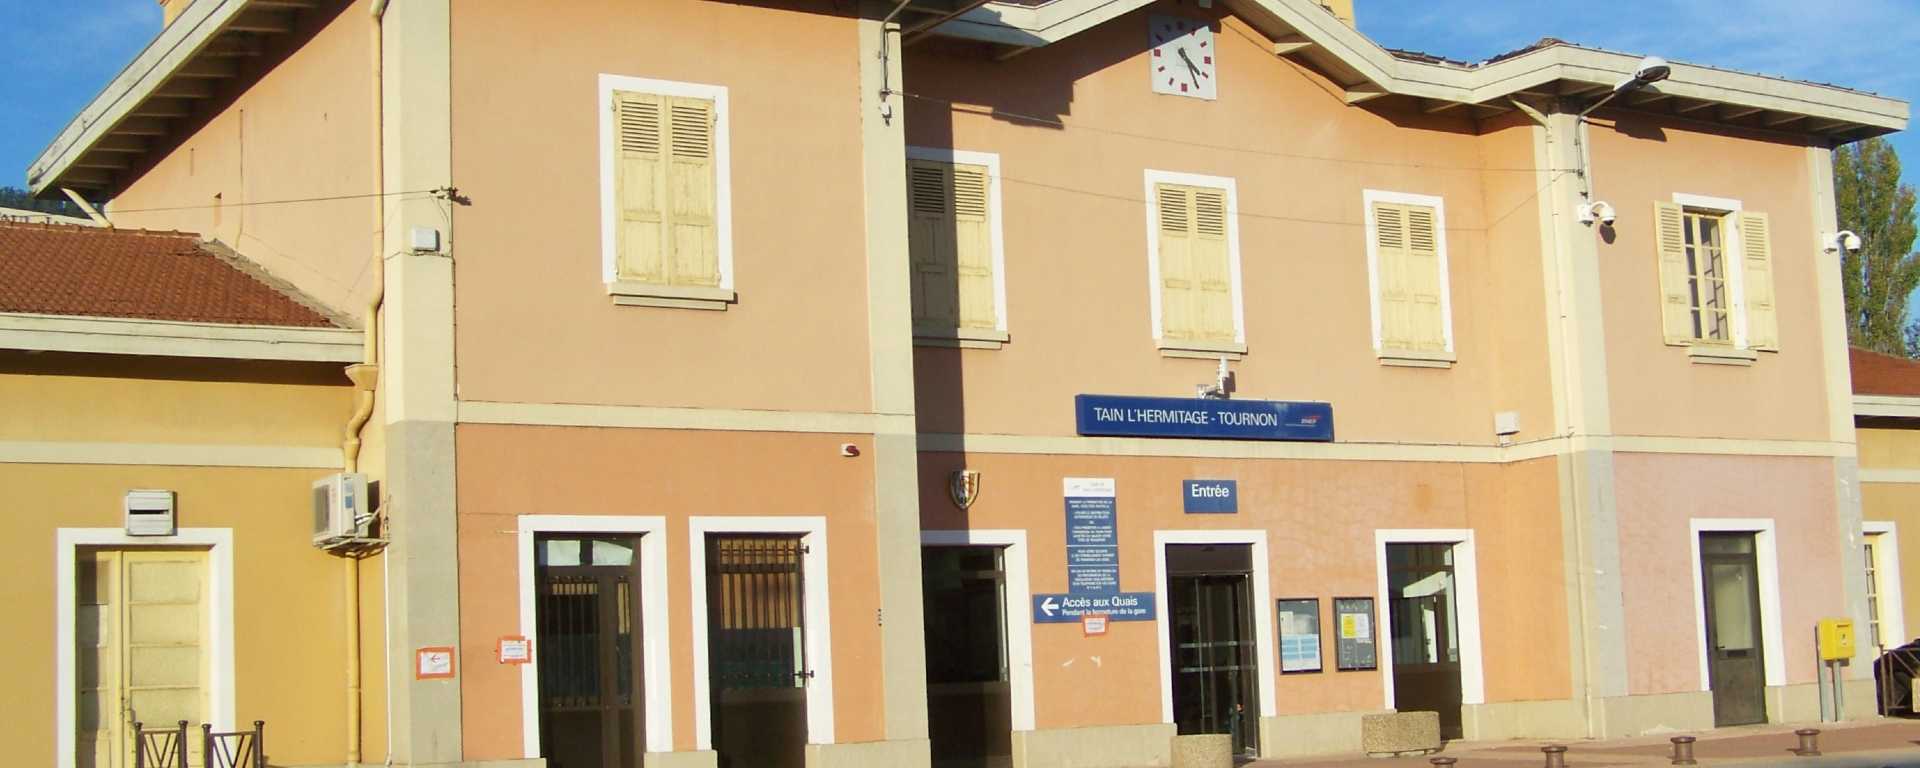 Gare de Tain-l’Hermitage dans la Drôme